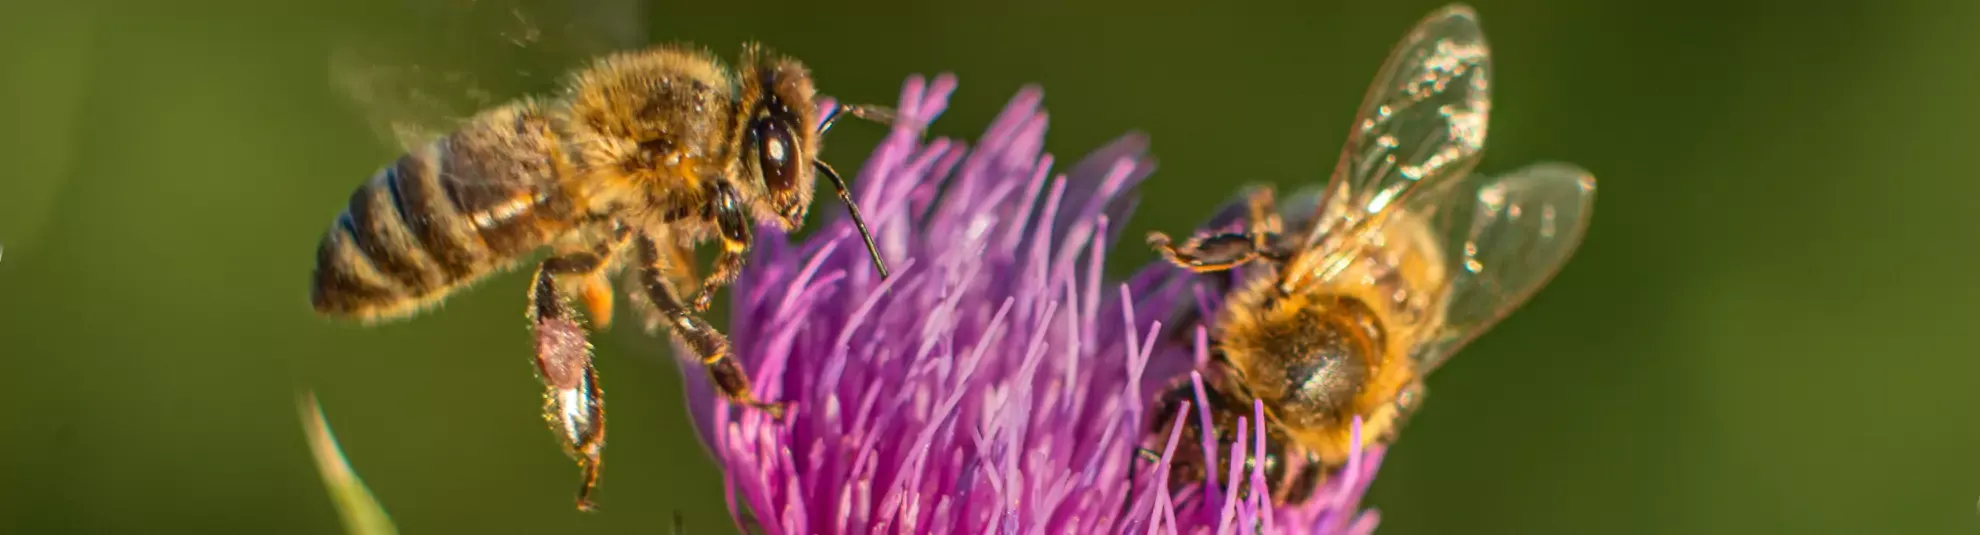 Ποιά εποχή παράγουν μέλι οι μέλισσες;